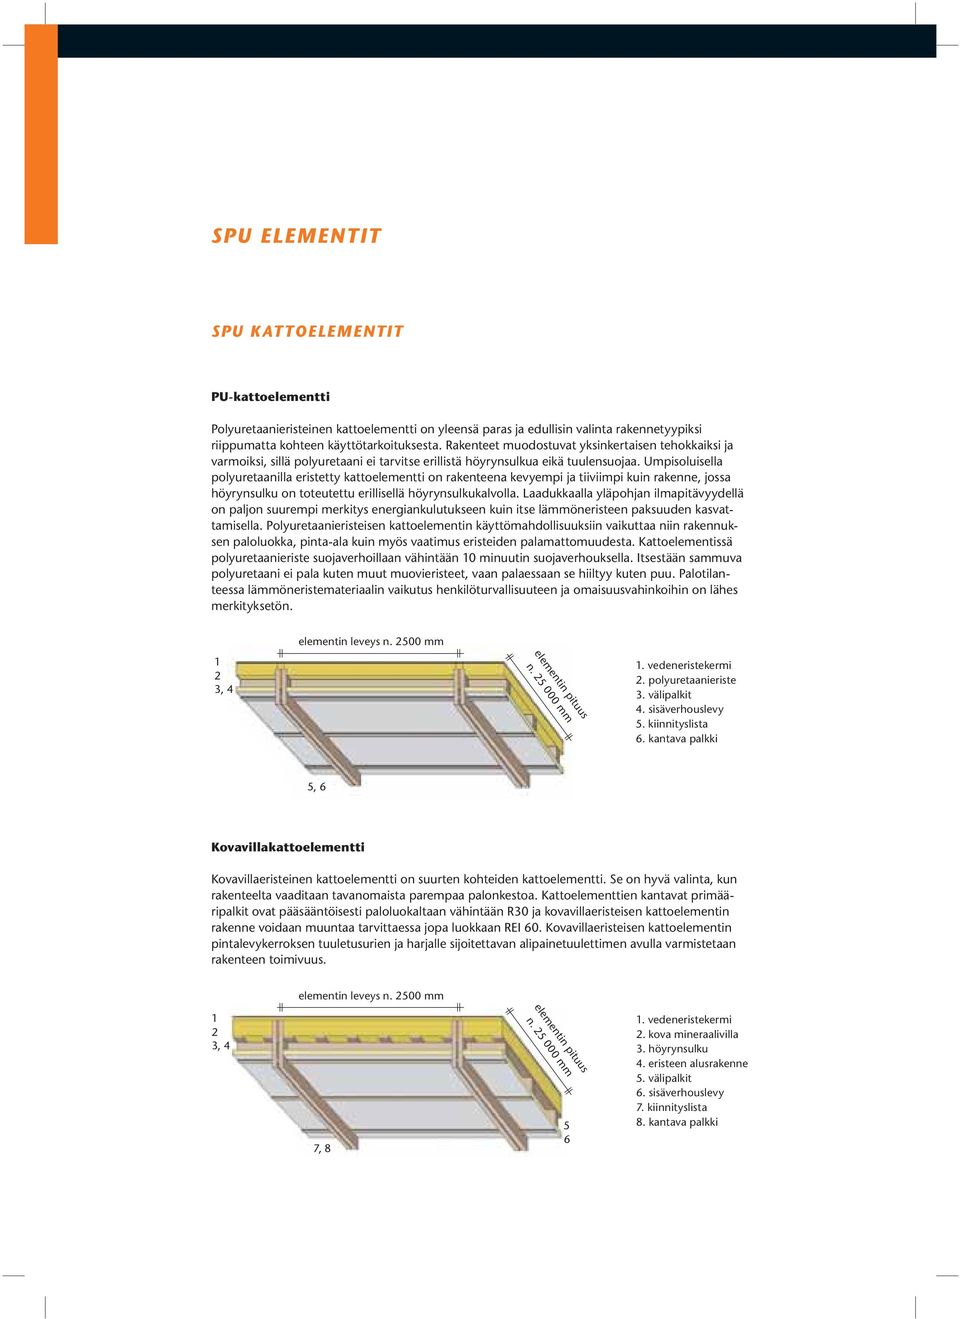 Umpisoluisella polyuretaanilla eristetty kattoelementti on rakenteena kevyempi ja tiiviimpi kuin rakenne, jossa höyrynsulku on toteutettu erillisellä höyrynsulkukalvolla.